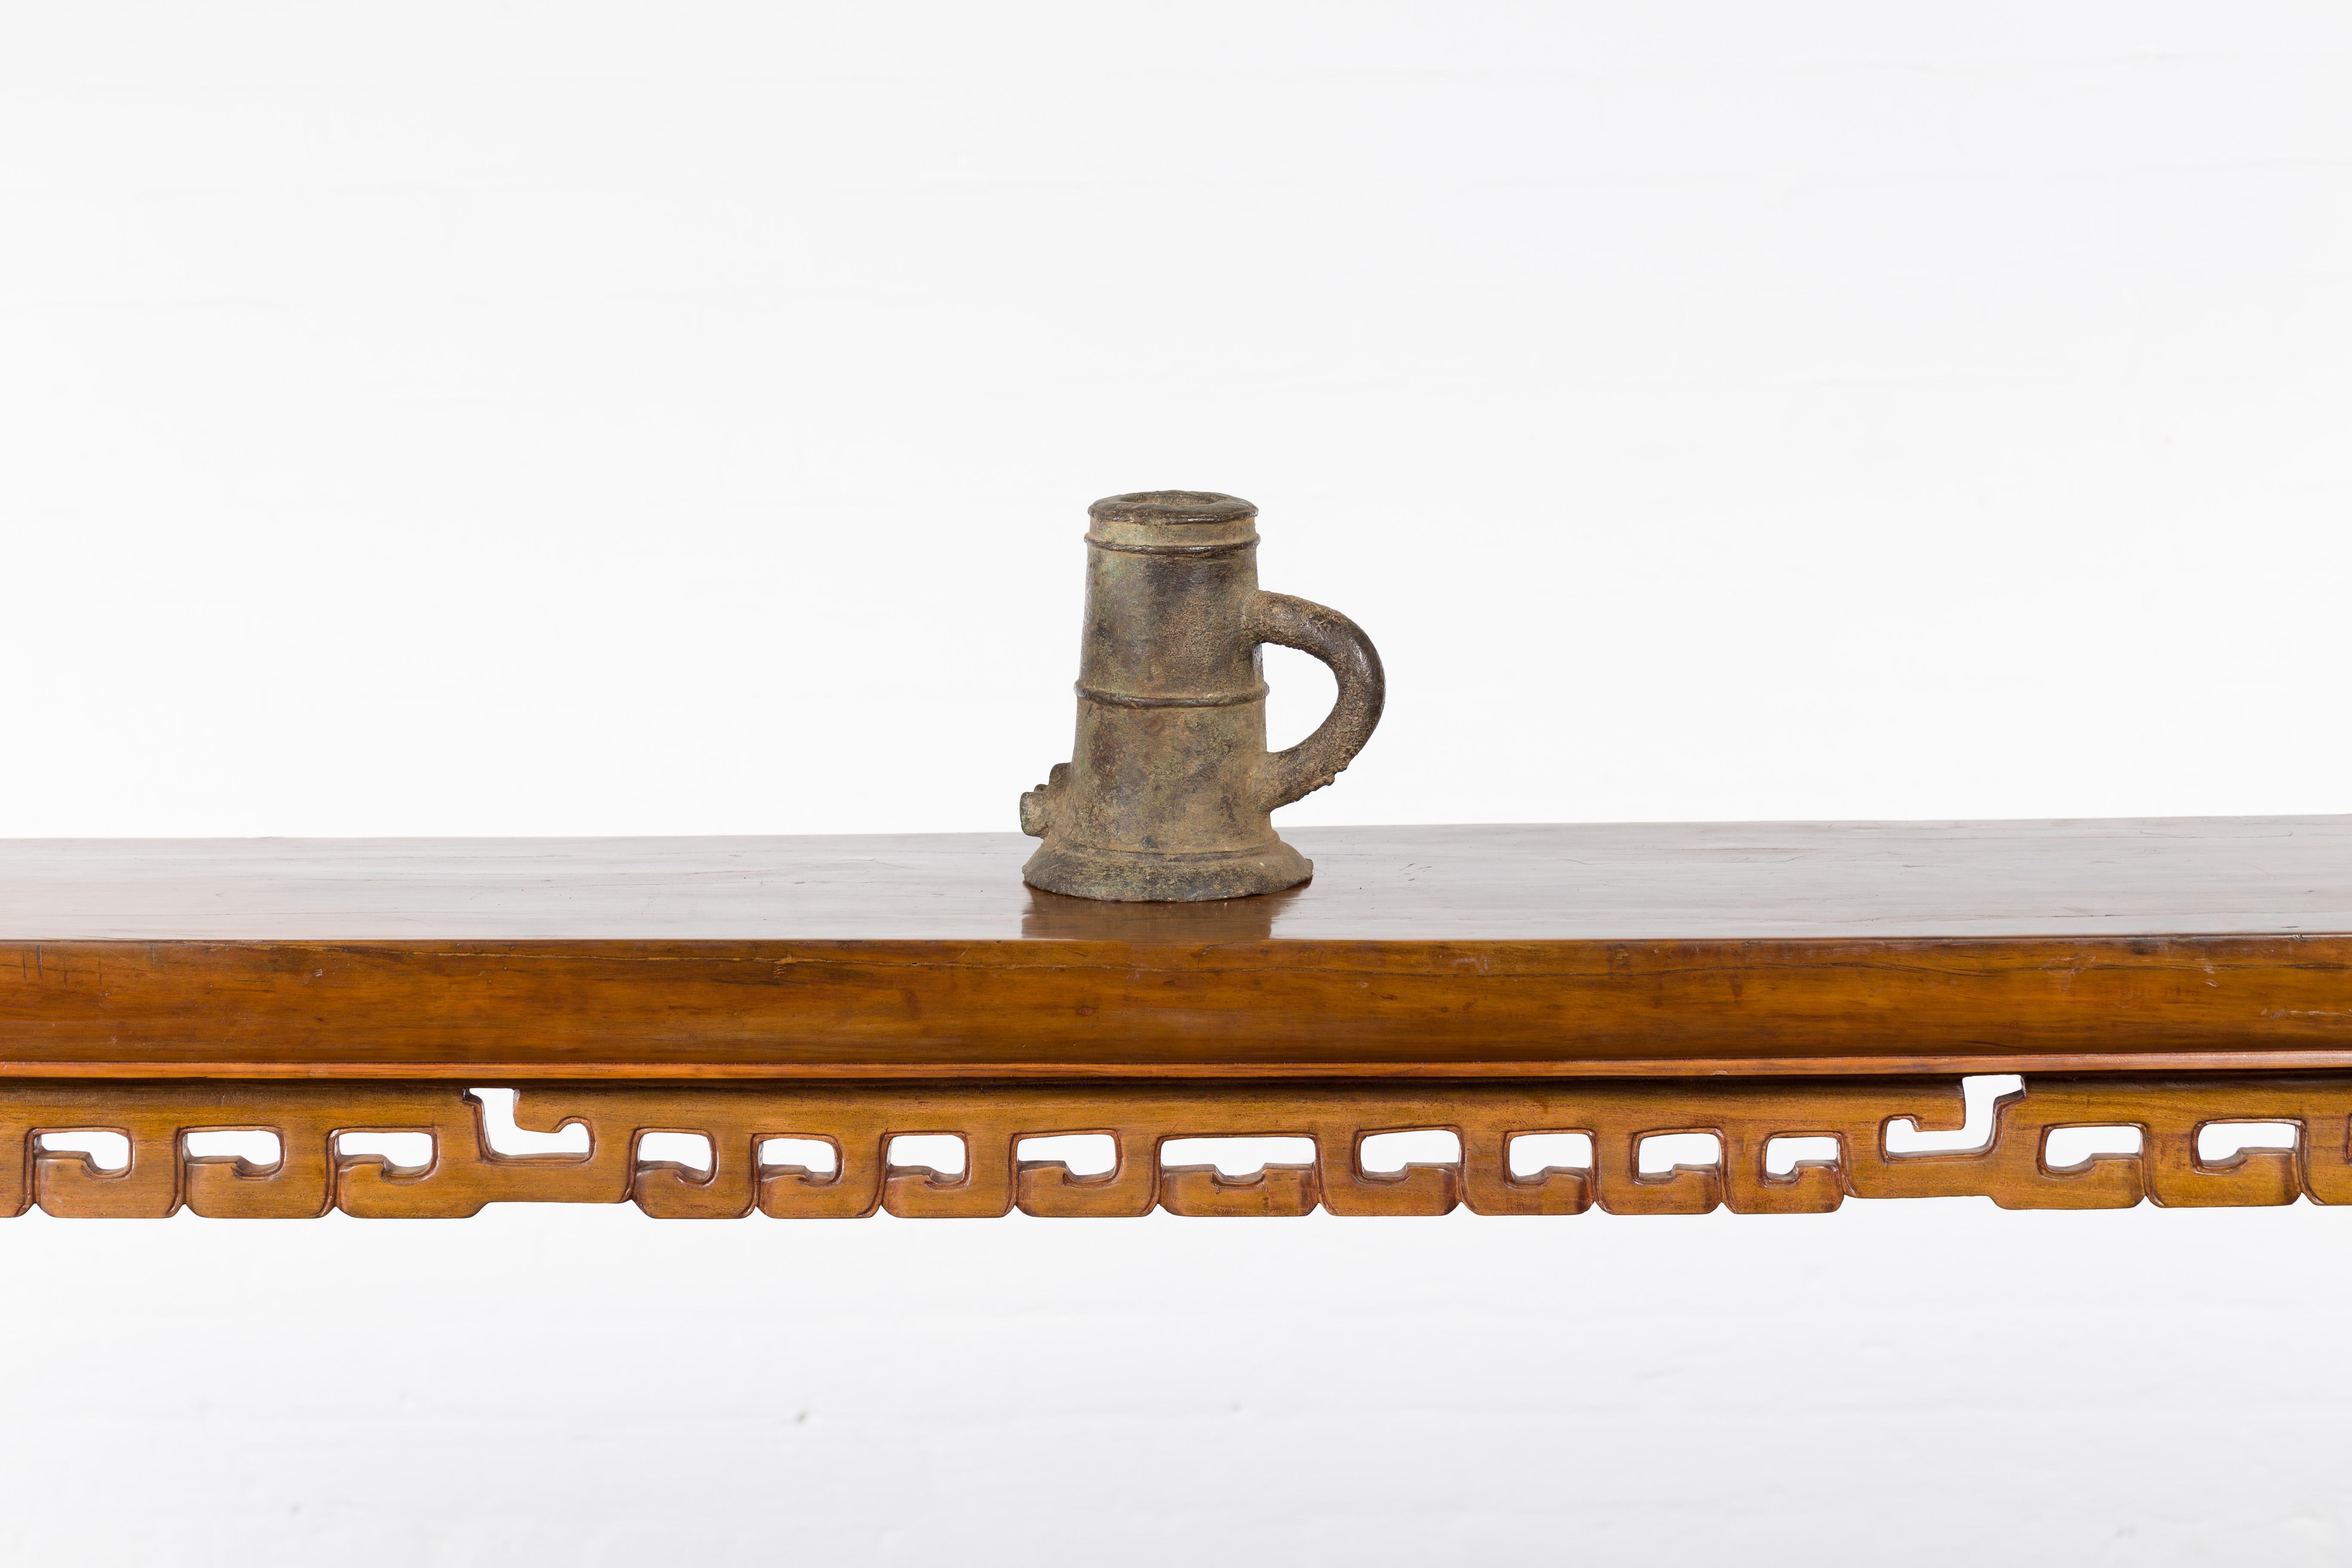 Un pot de fusion indien ancien du 19ème siècle, avec poignée arrière, bec avant et belle patine. Créé en Inde au XIXe siècle, ce creuset, utilisé pour fondre les métaux en un liquide à verser dans un moule, constituera une belle addition décorative